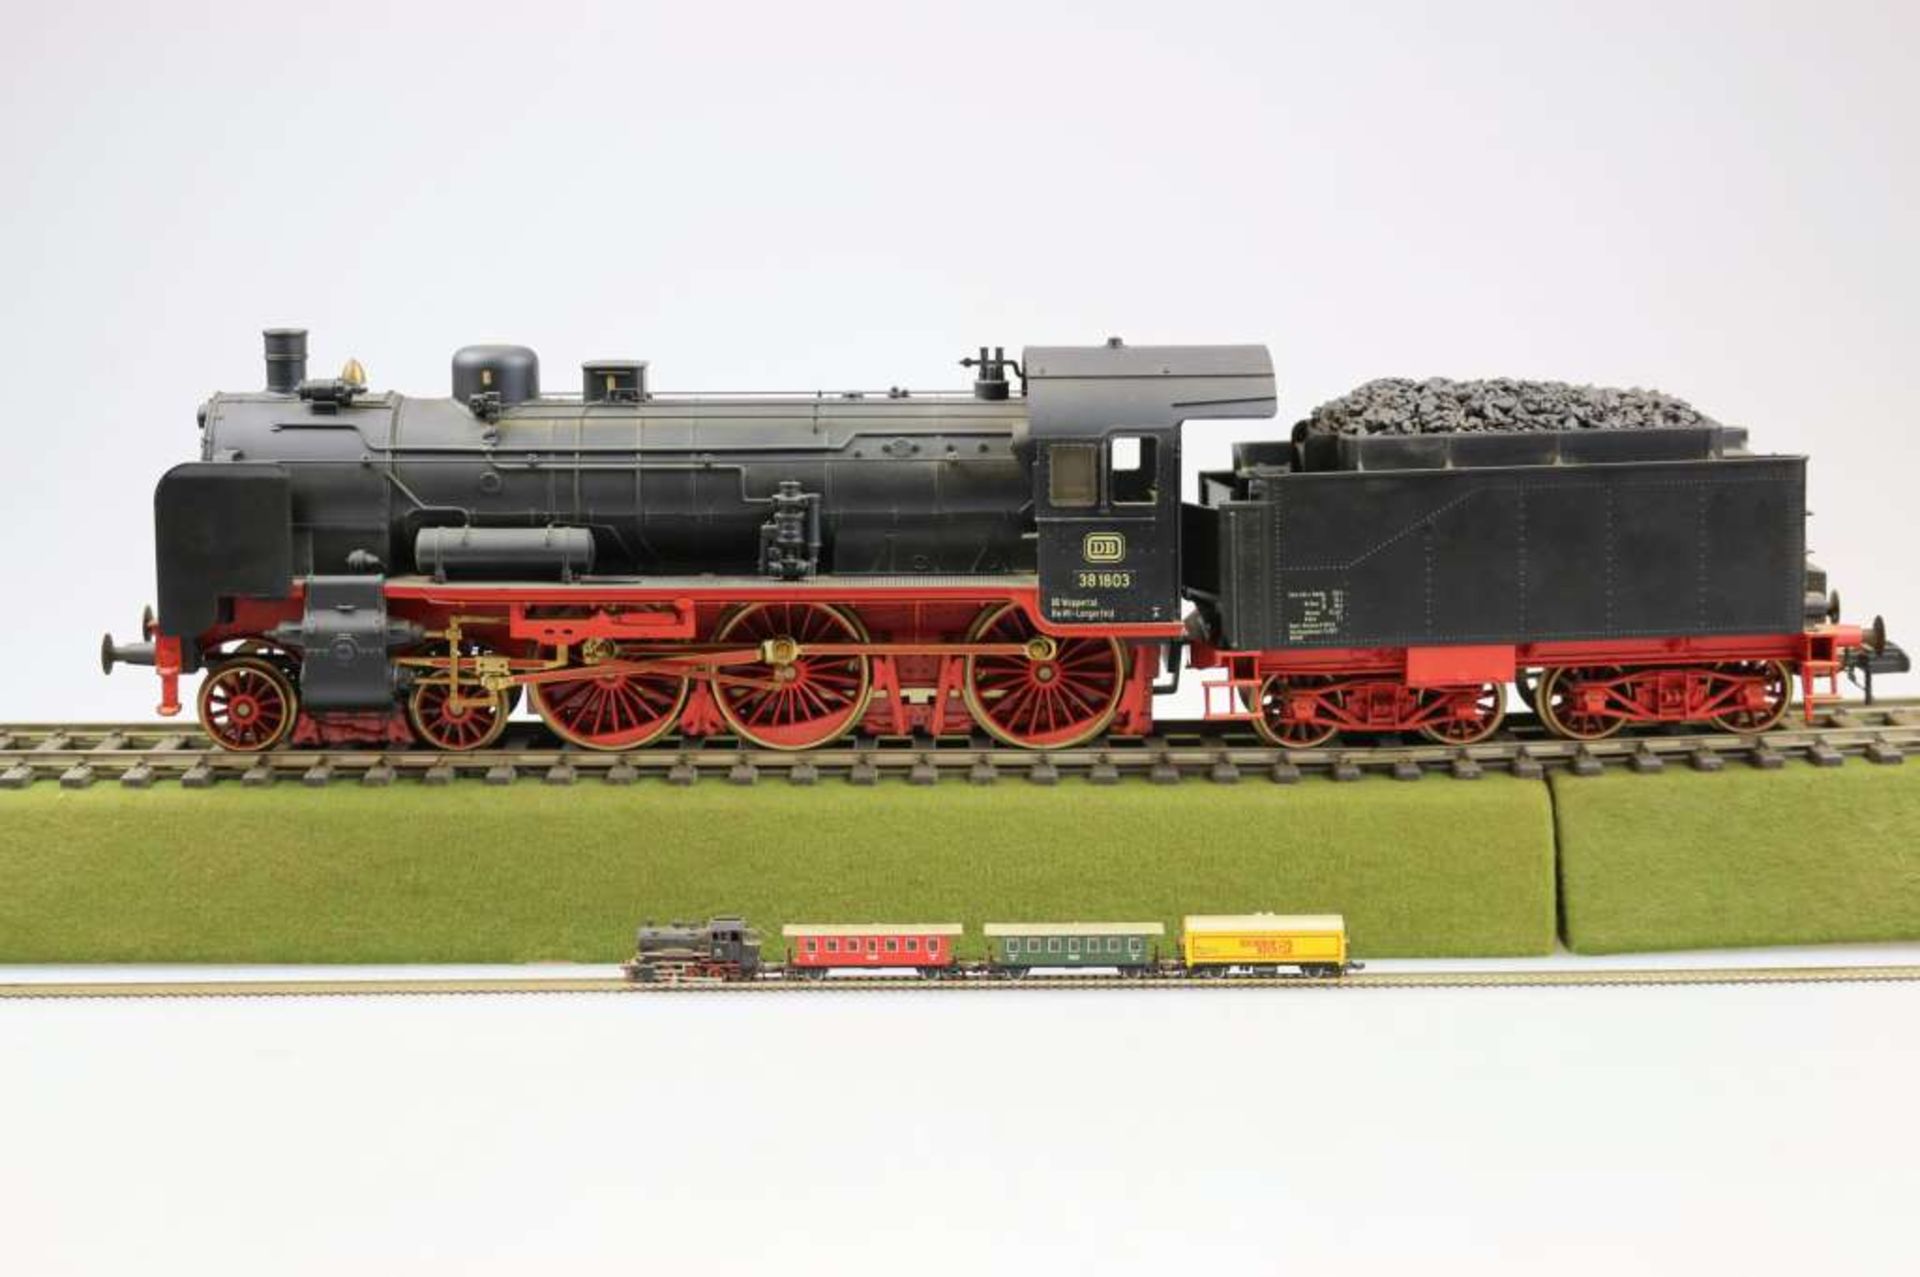 Märklin Spur 1 Nr. 5747, Dampflokomotive BR 38 1803 der DB mit Schlepptender. Sound und